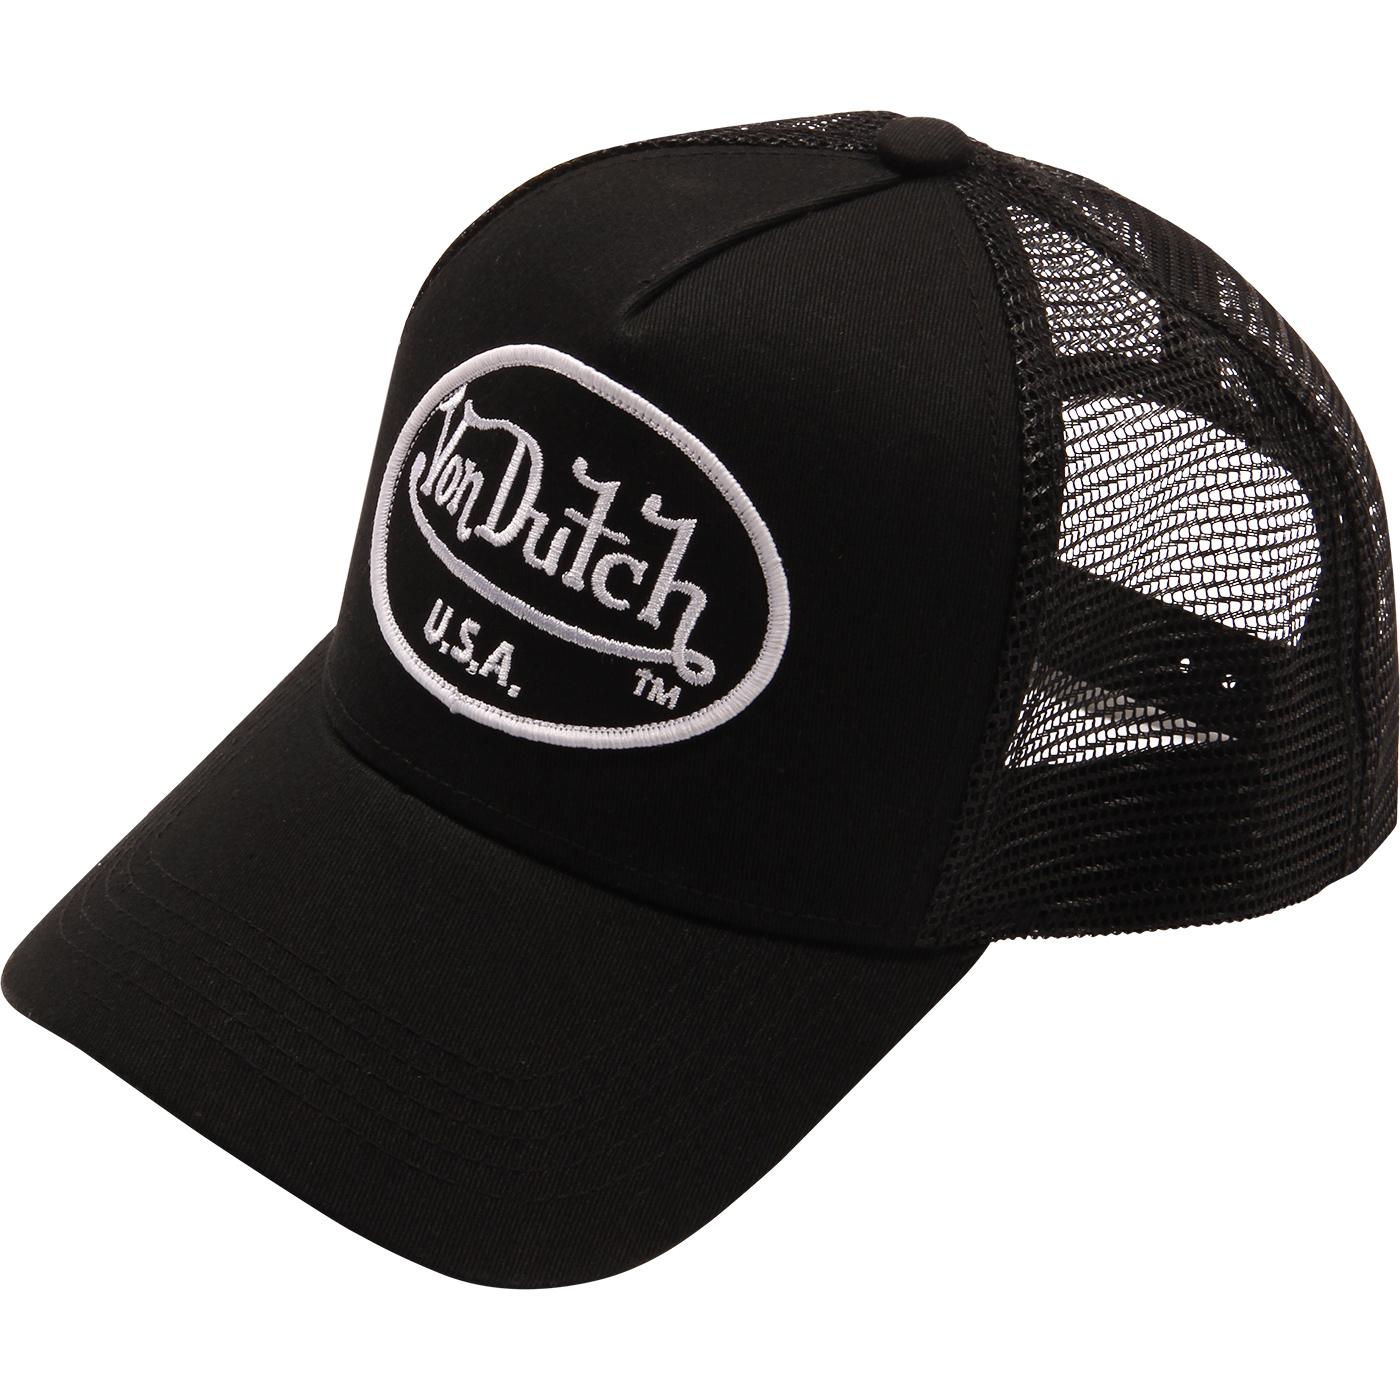 Vintage Brand New Black Von Dutch Cap / Von Dutch Visor Cap / Von Dutch  Hat. Deadstock New With Tags 